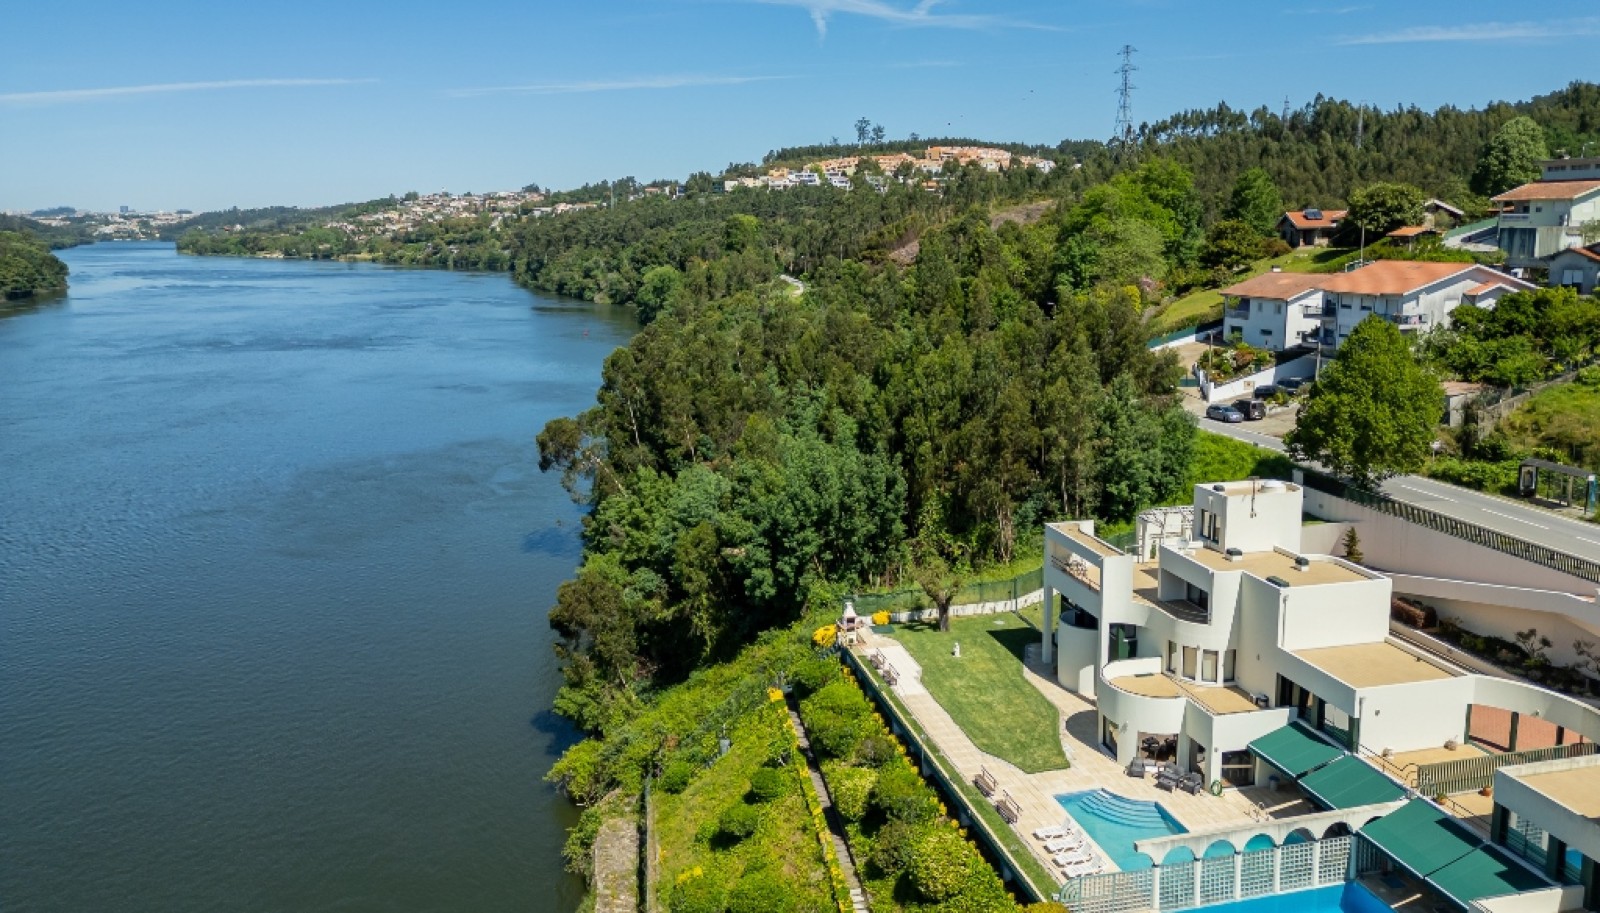 Moradia V4 com piscina e vistas de rio, à venda, Foz do Sousa, Portugal_262067